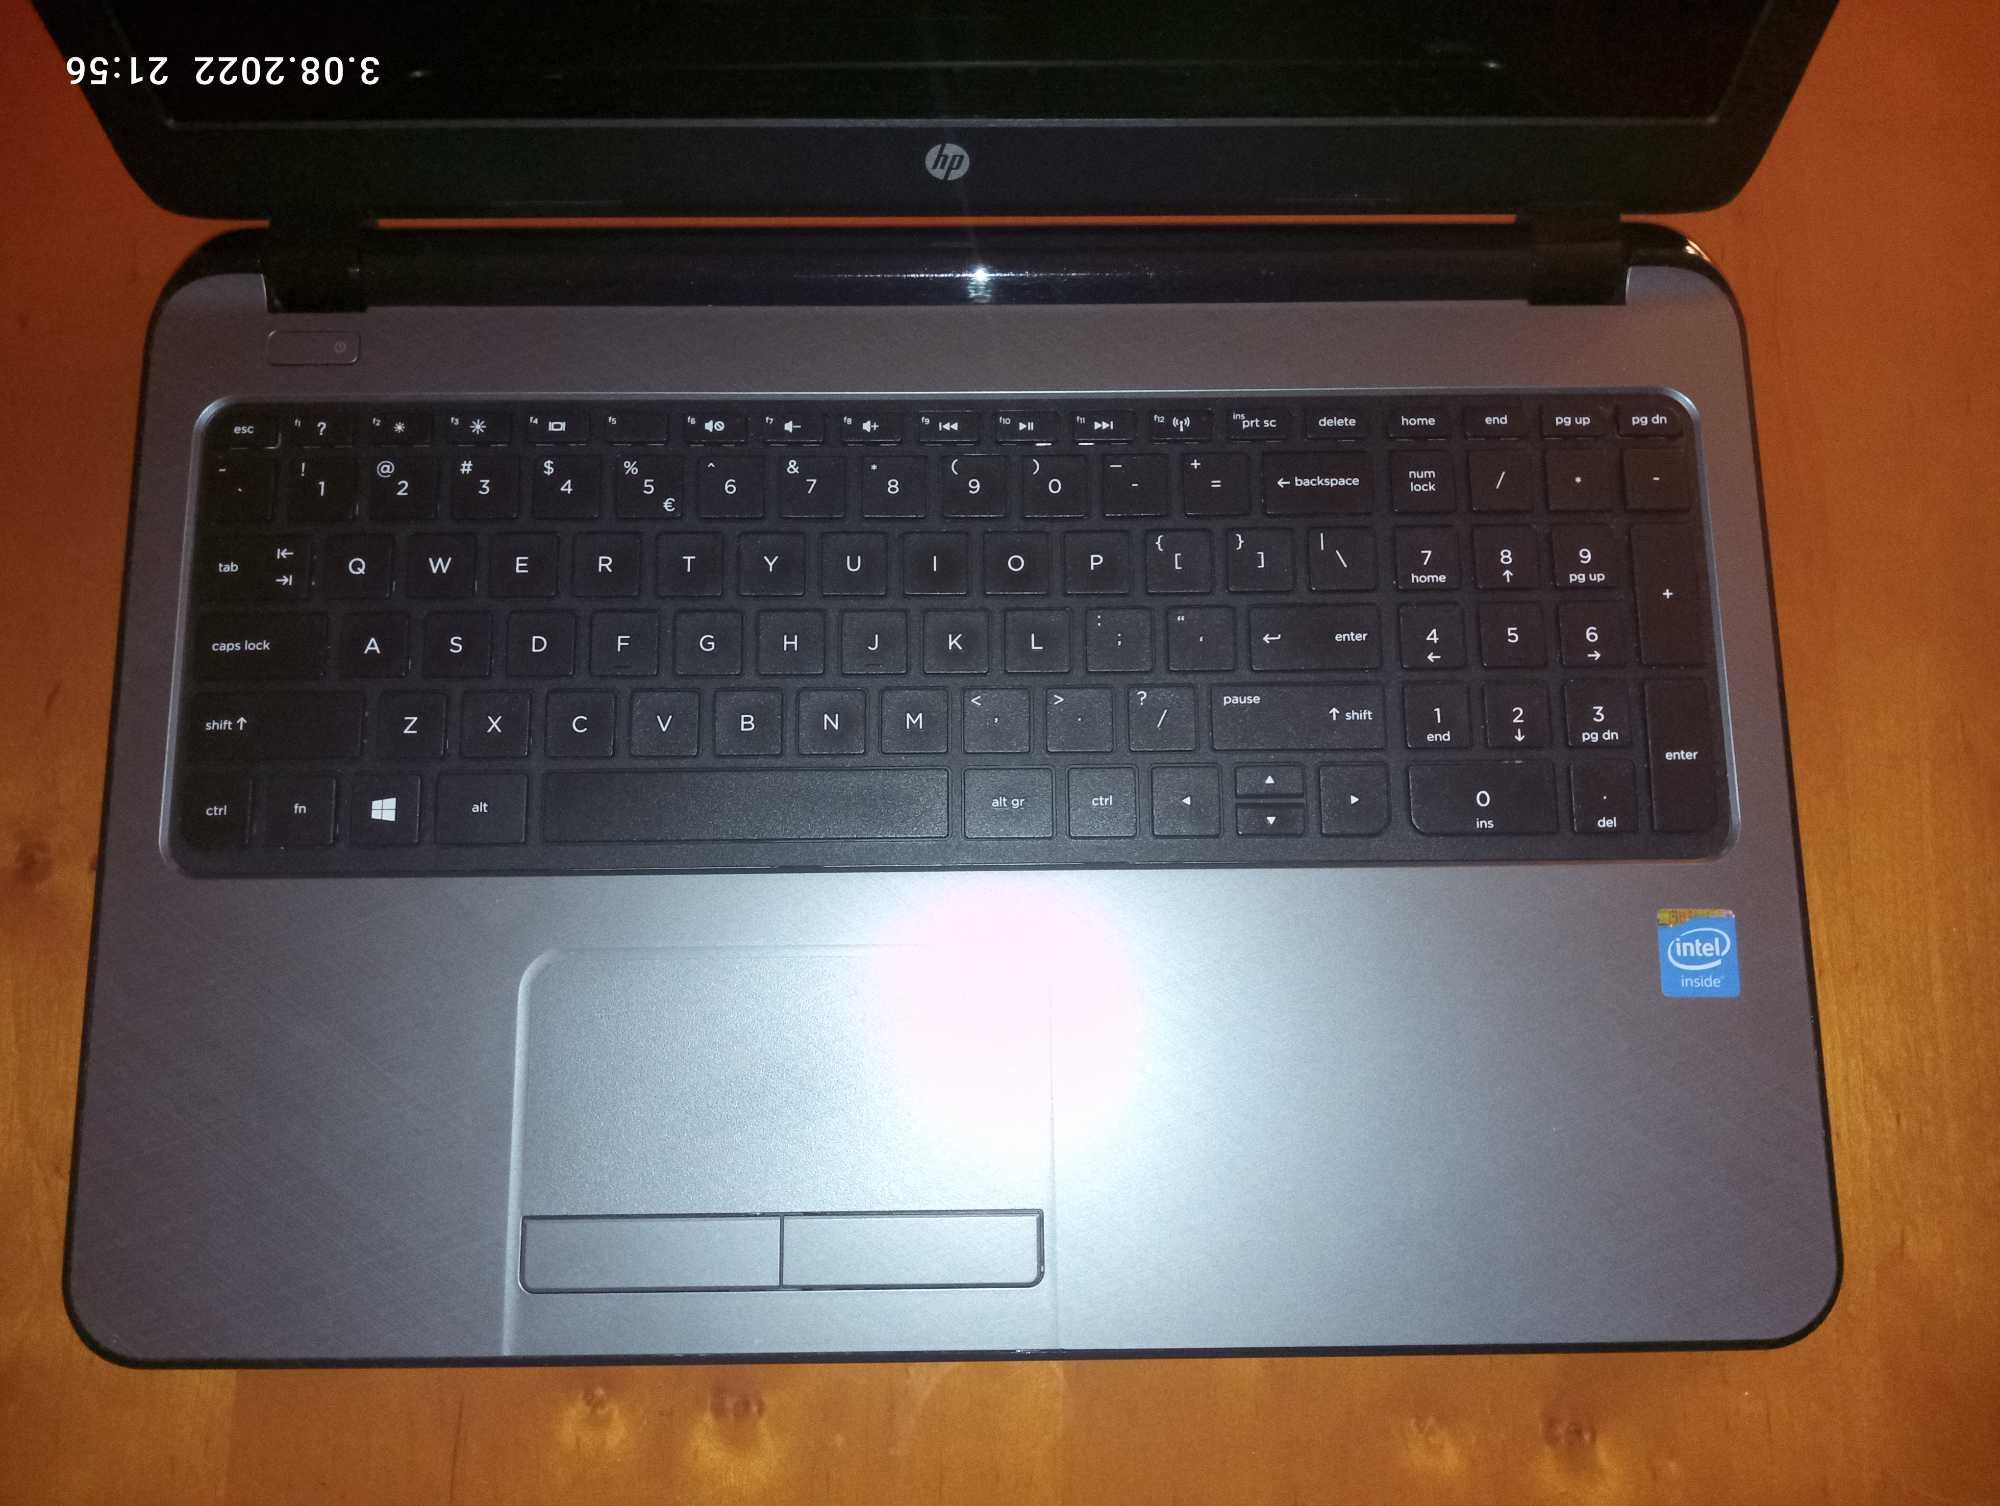 Komputer laptop HP jak nowy – skonfigurowany – gotowy do pracy